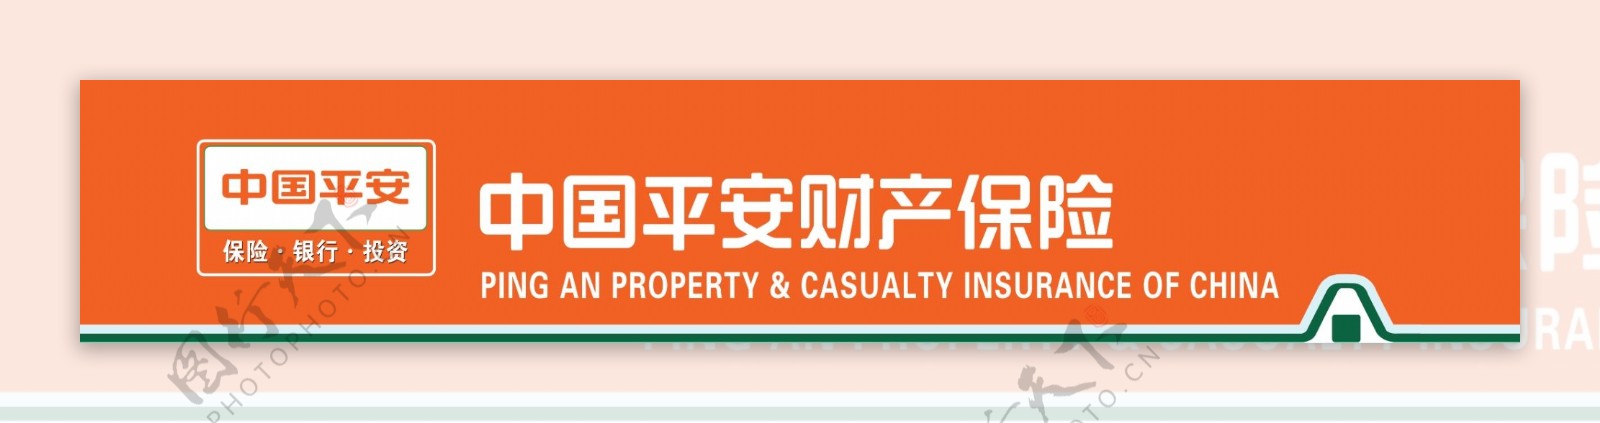 中国平安财产保险图片